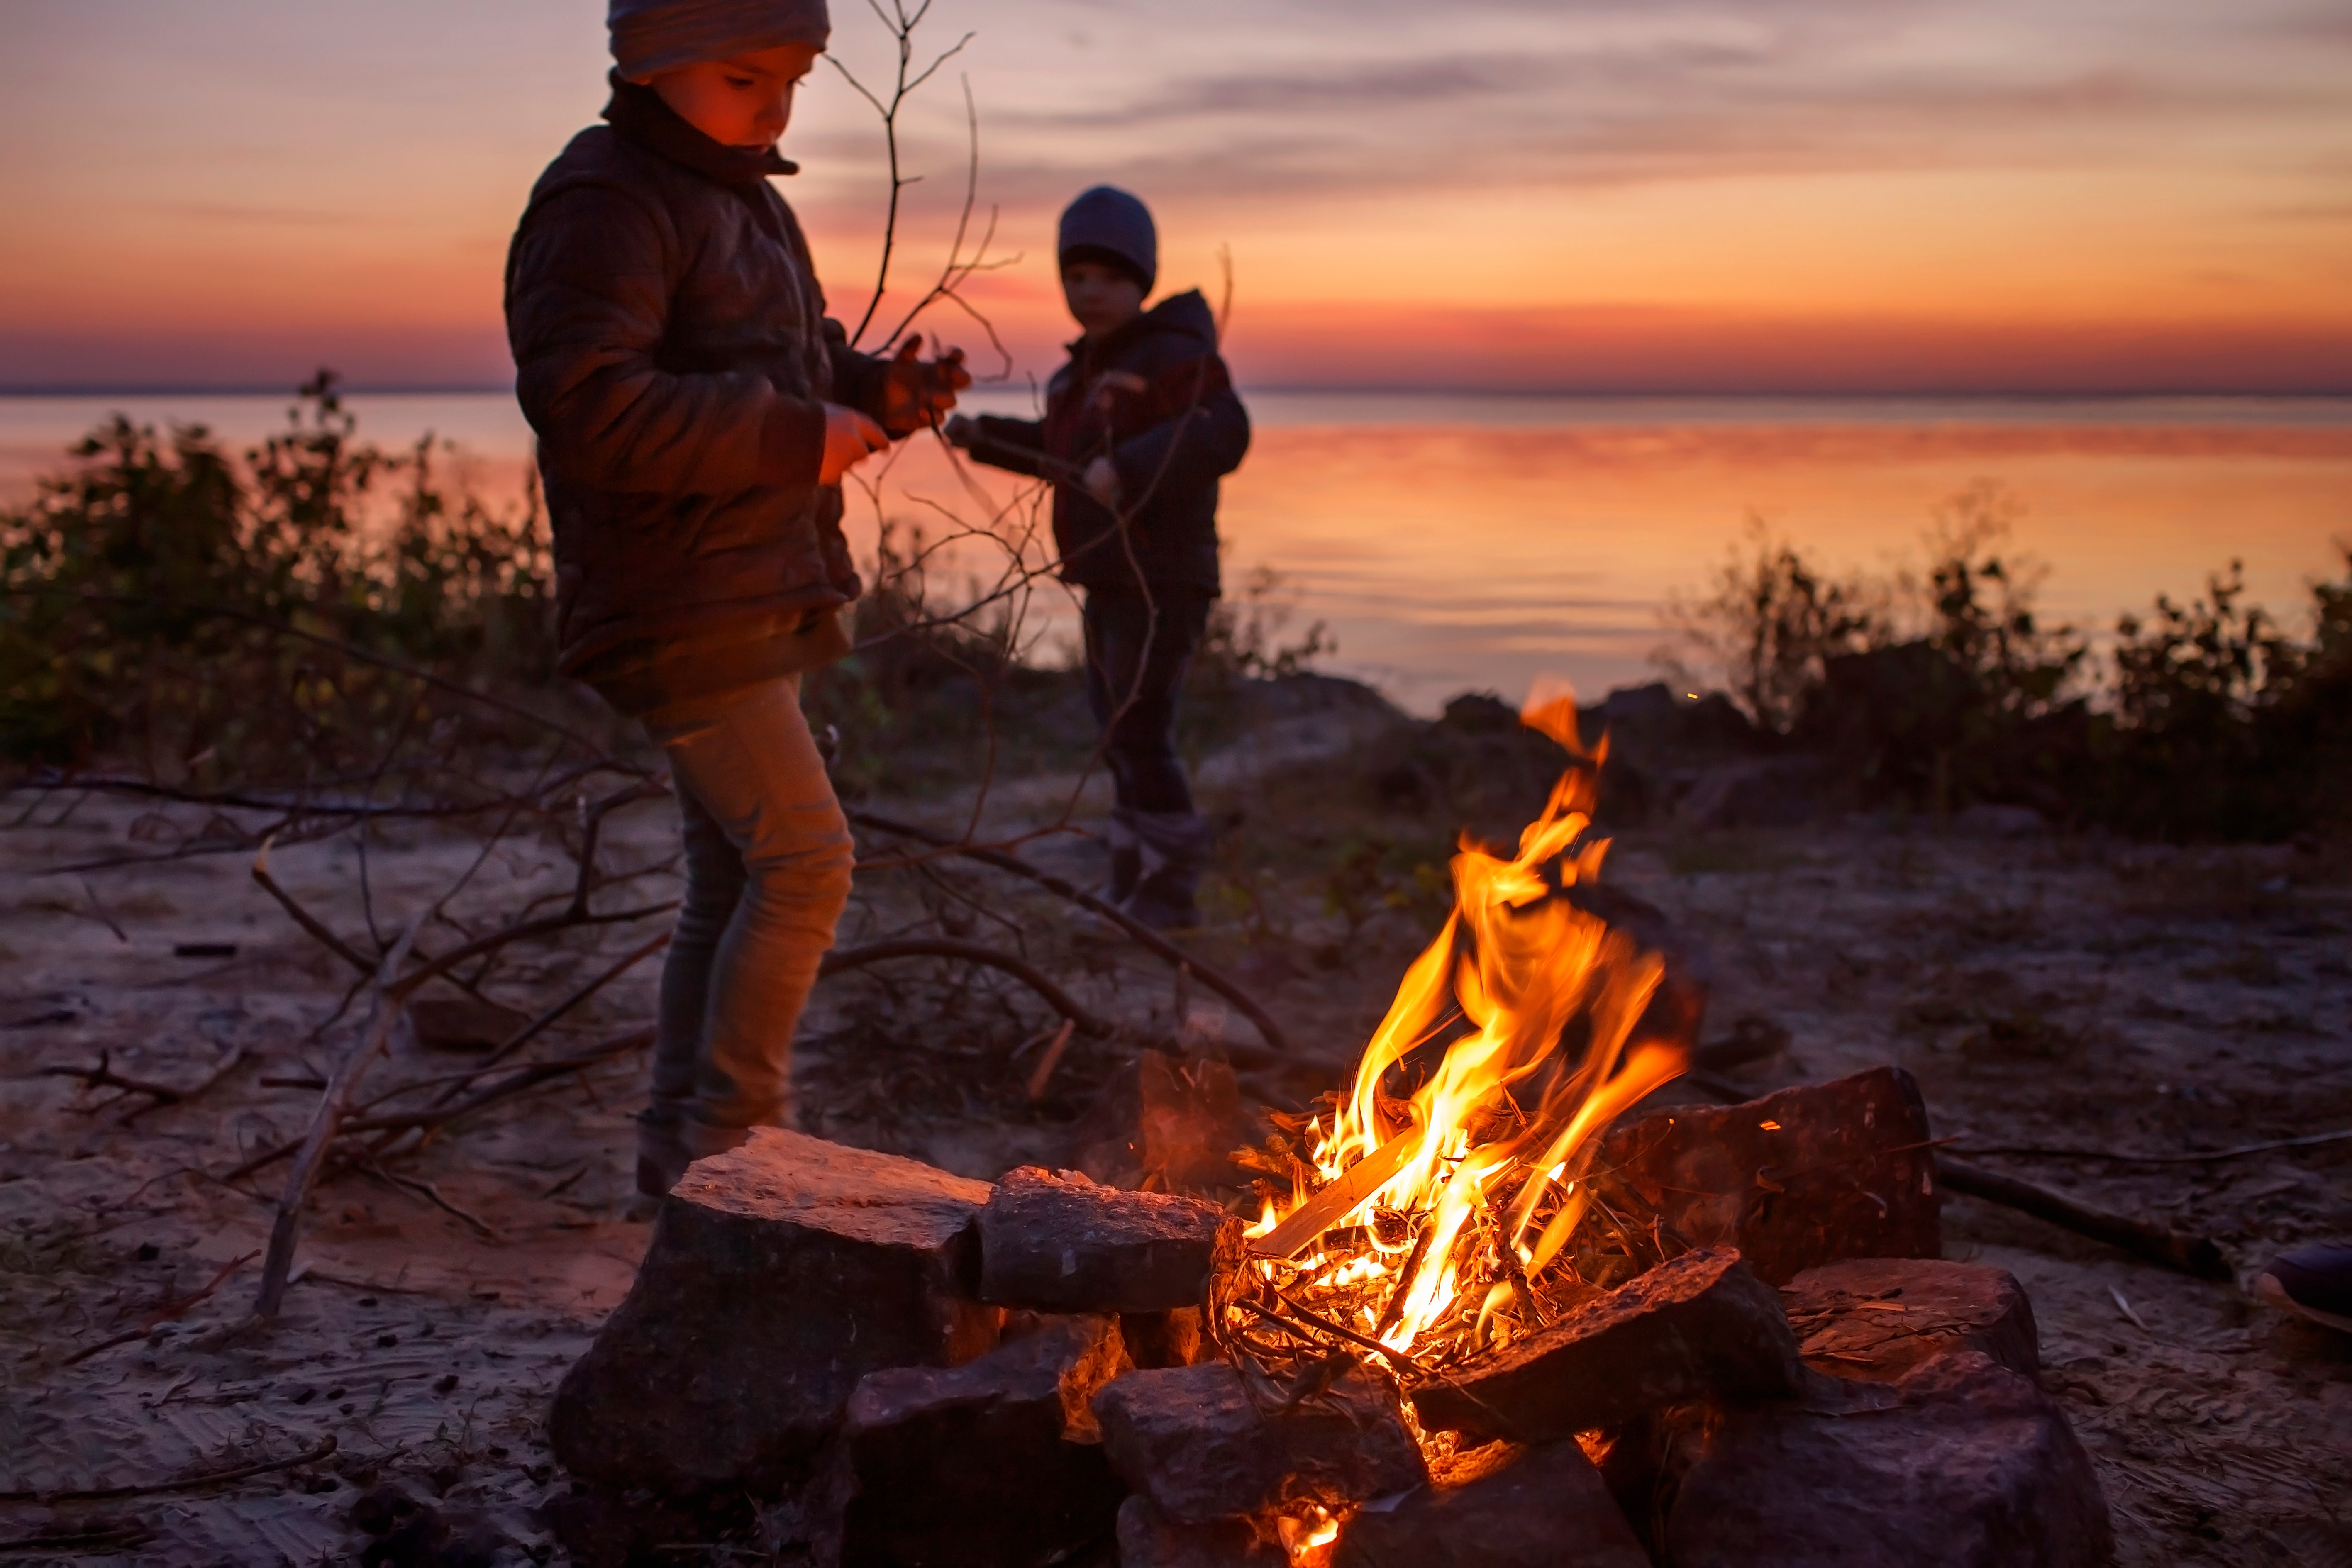 Niños de diferentes edades sentados cerca del fuego | Fuente: Shutterstock.com